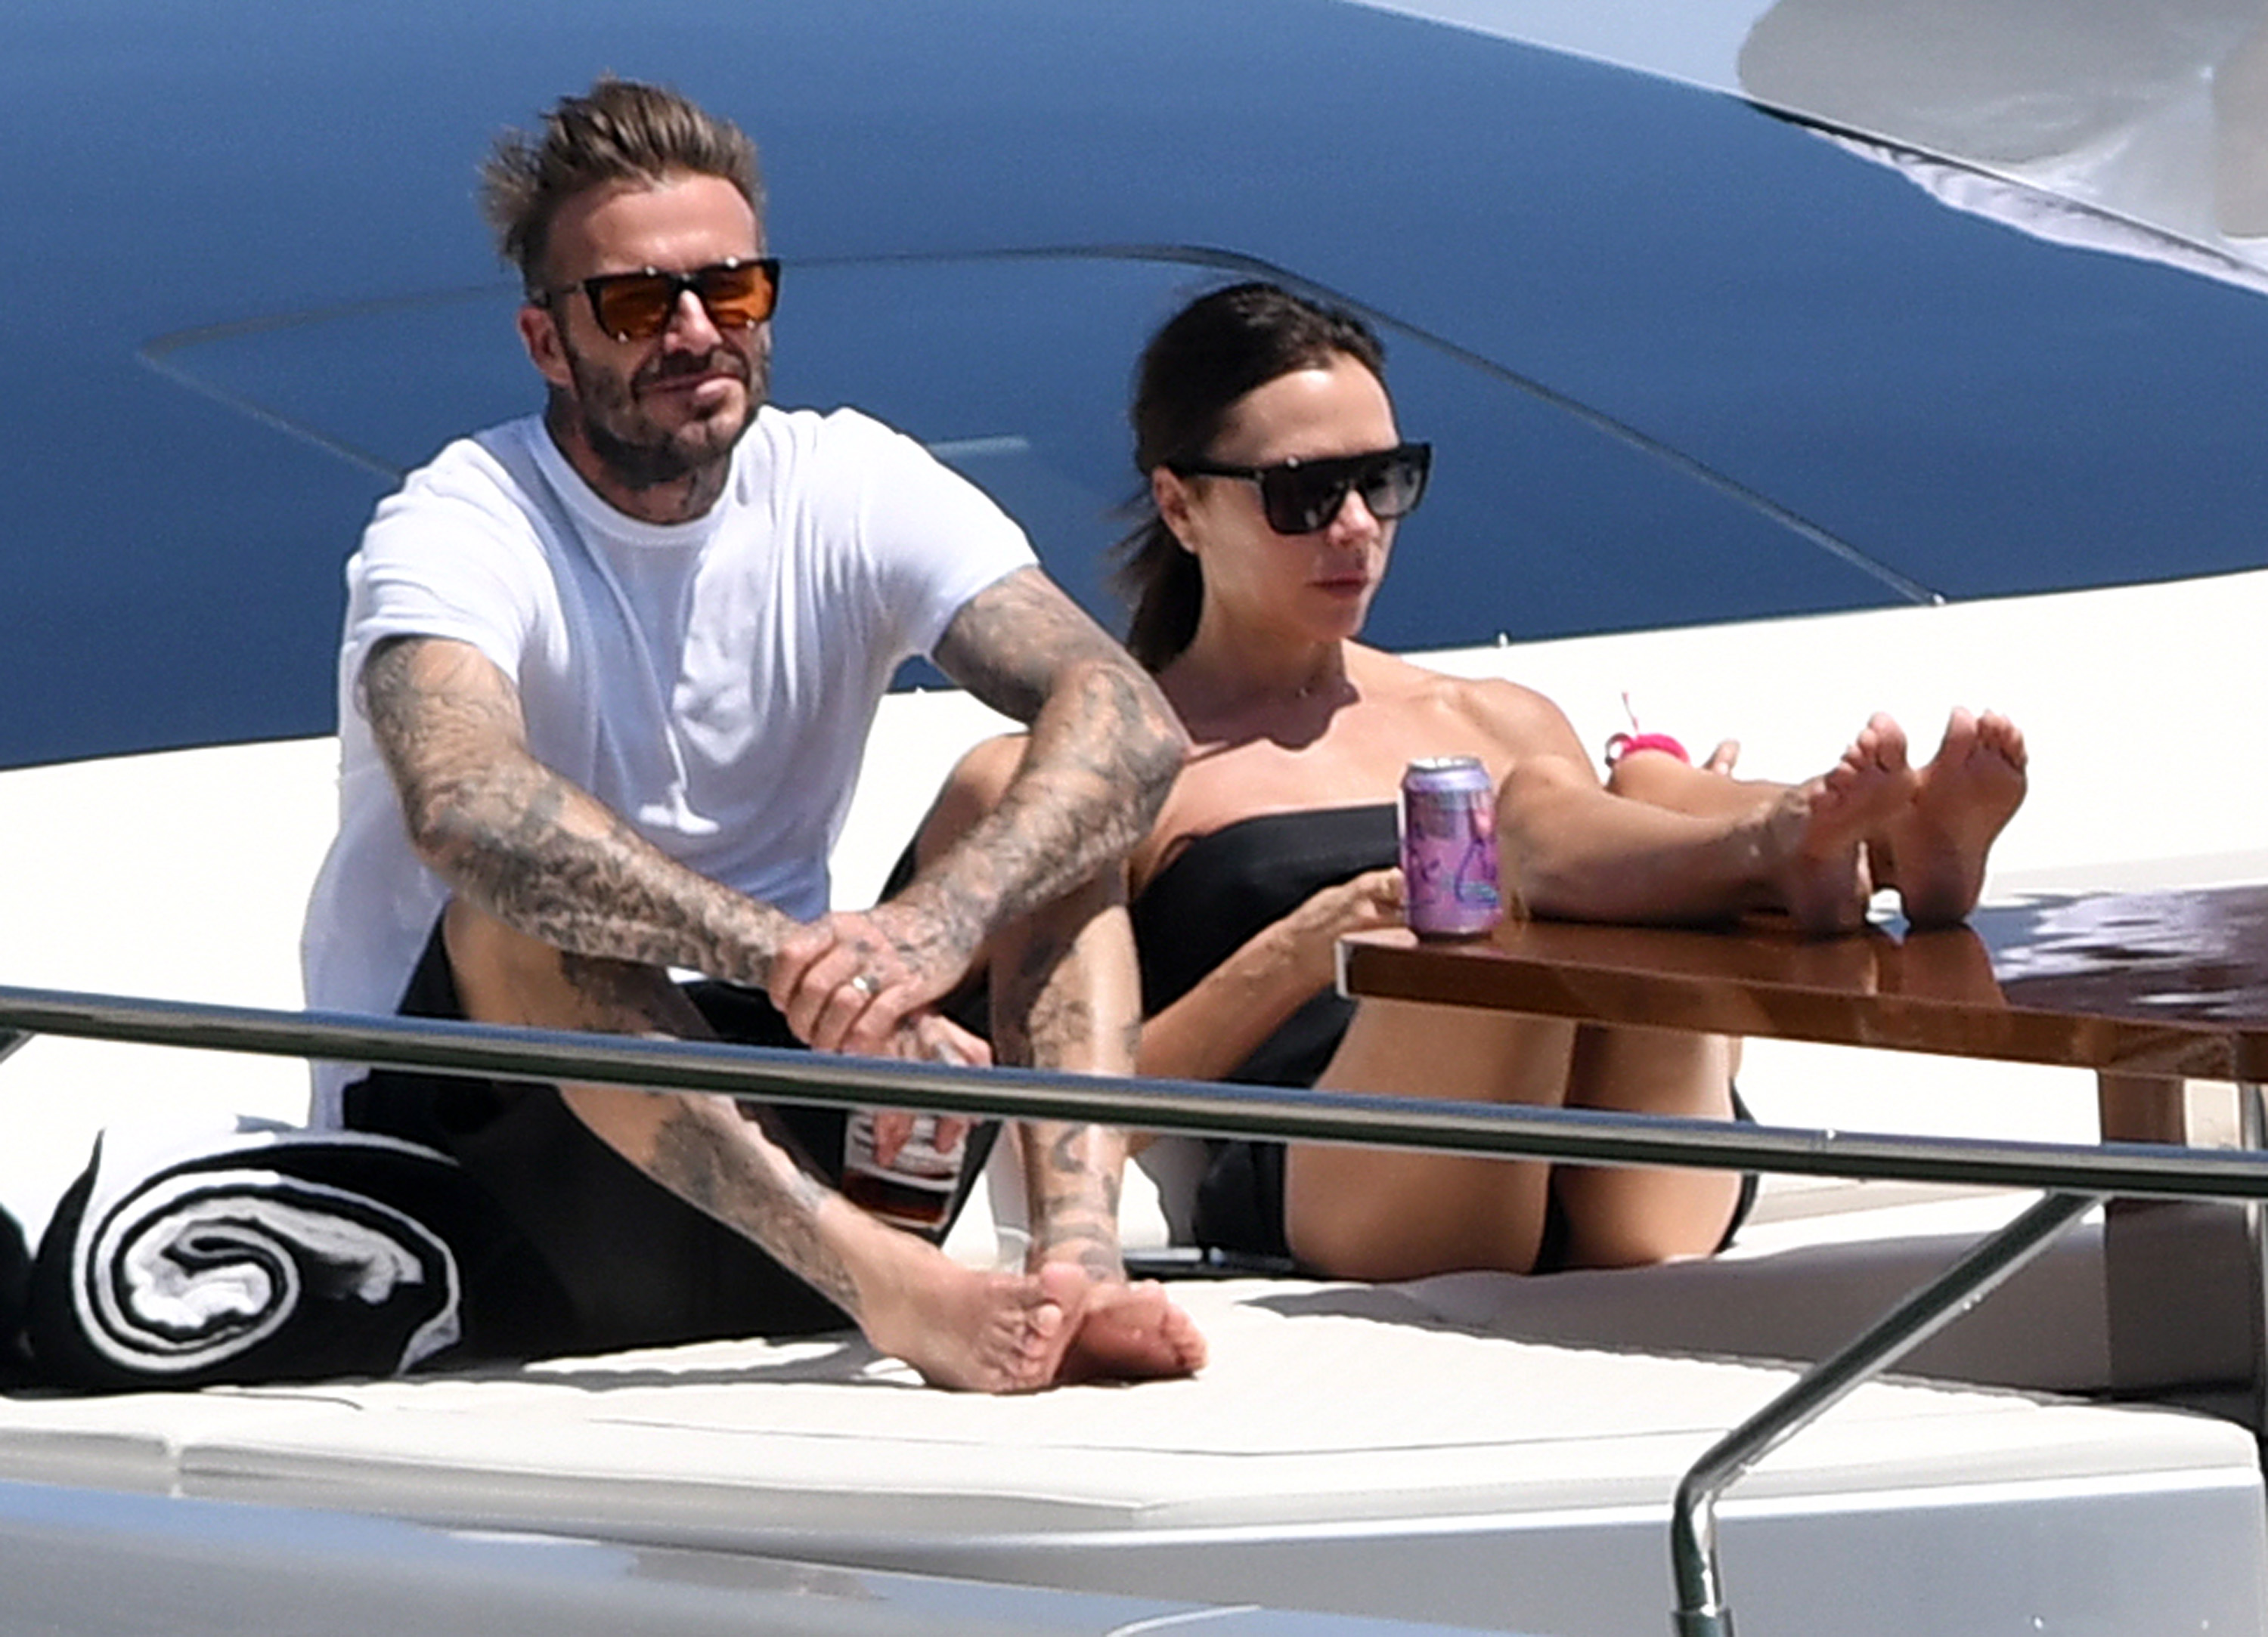 Un paseo distinto. David y Victoria Beckham salieron en un lujoso yate por Miami para disfrutar de un día de sol. La pareja descansó en la embarcación junto a sus hijos. Toda la familia regresó por la tarde, cuando ya había bajado el sol